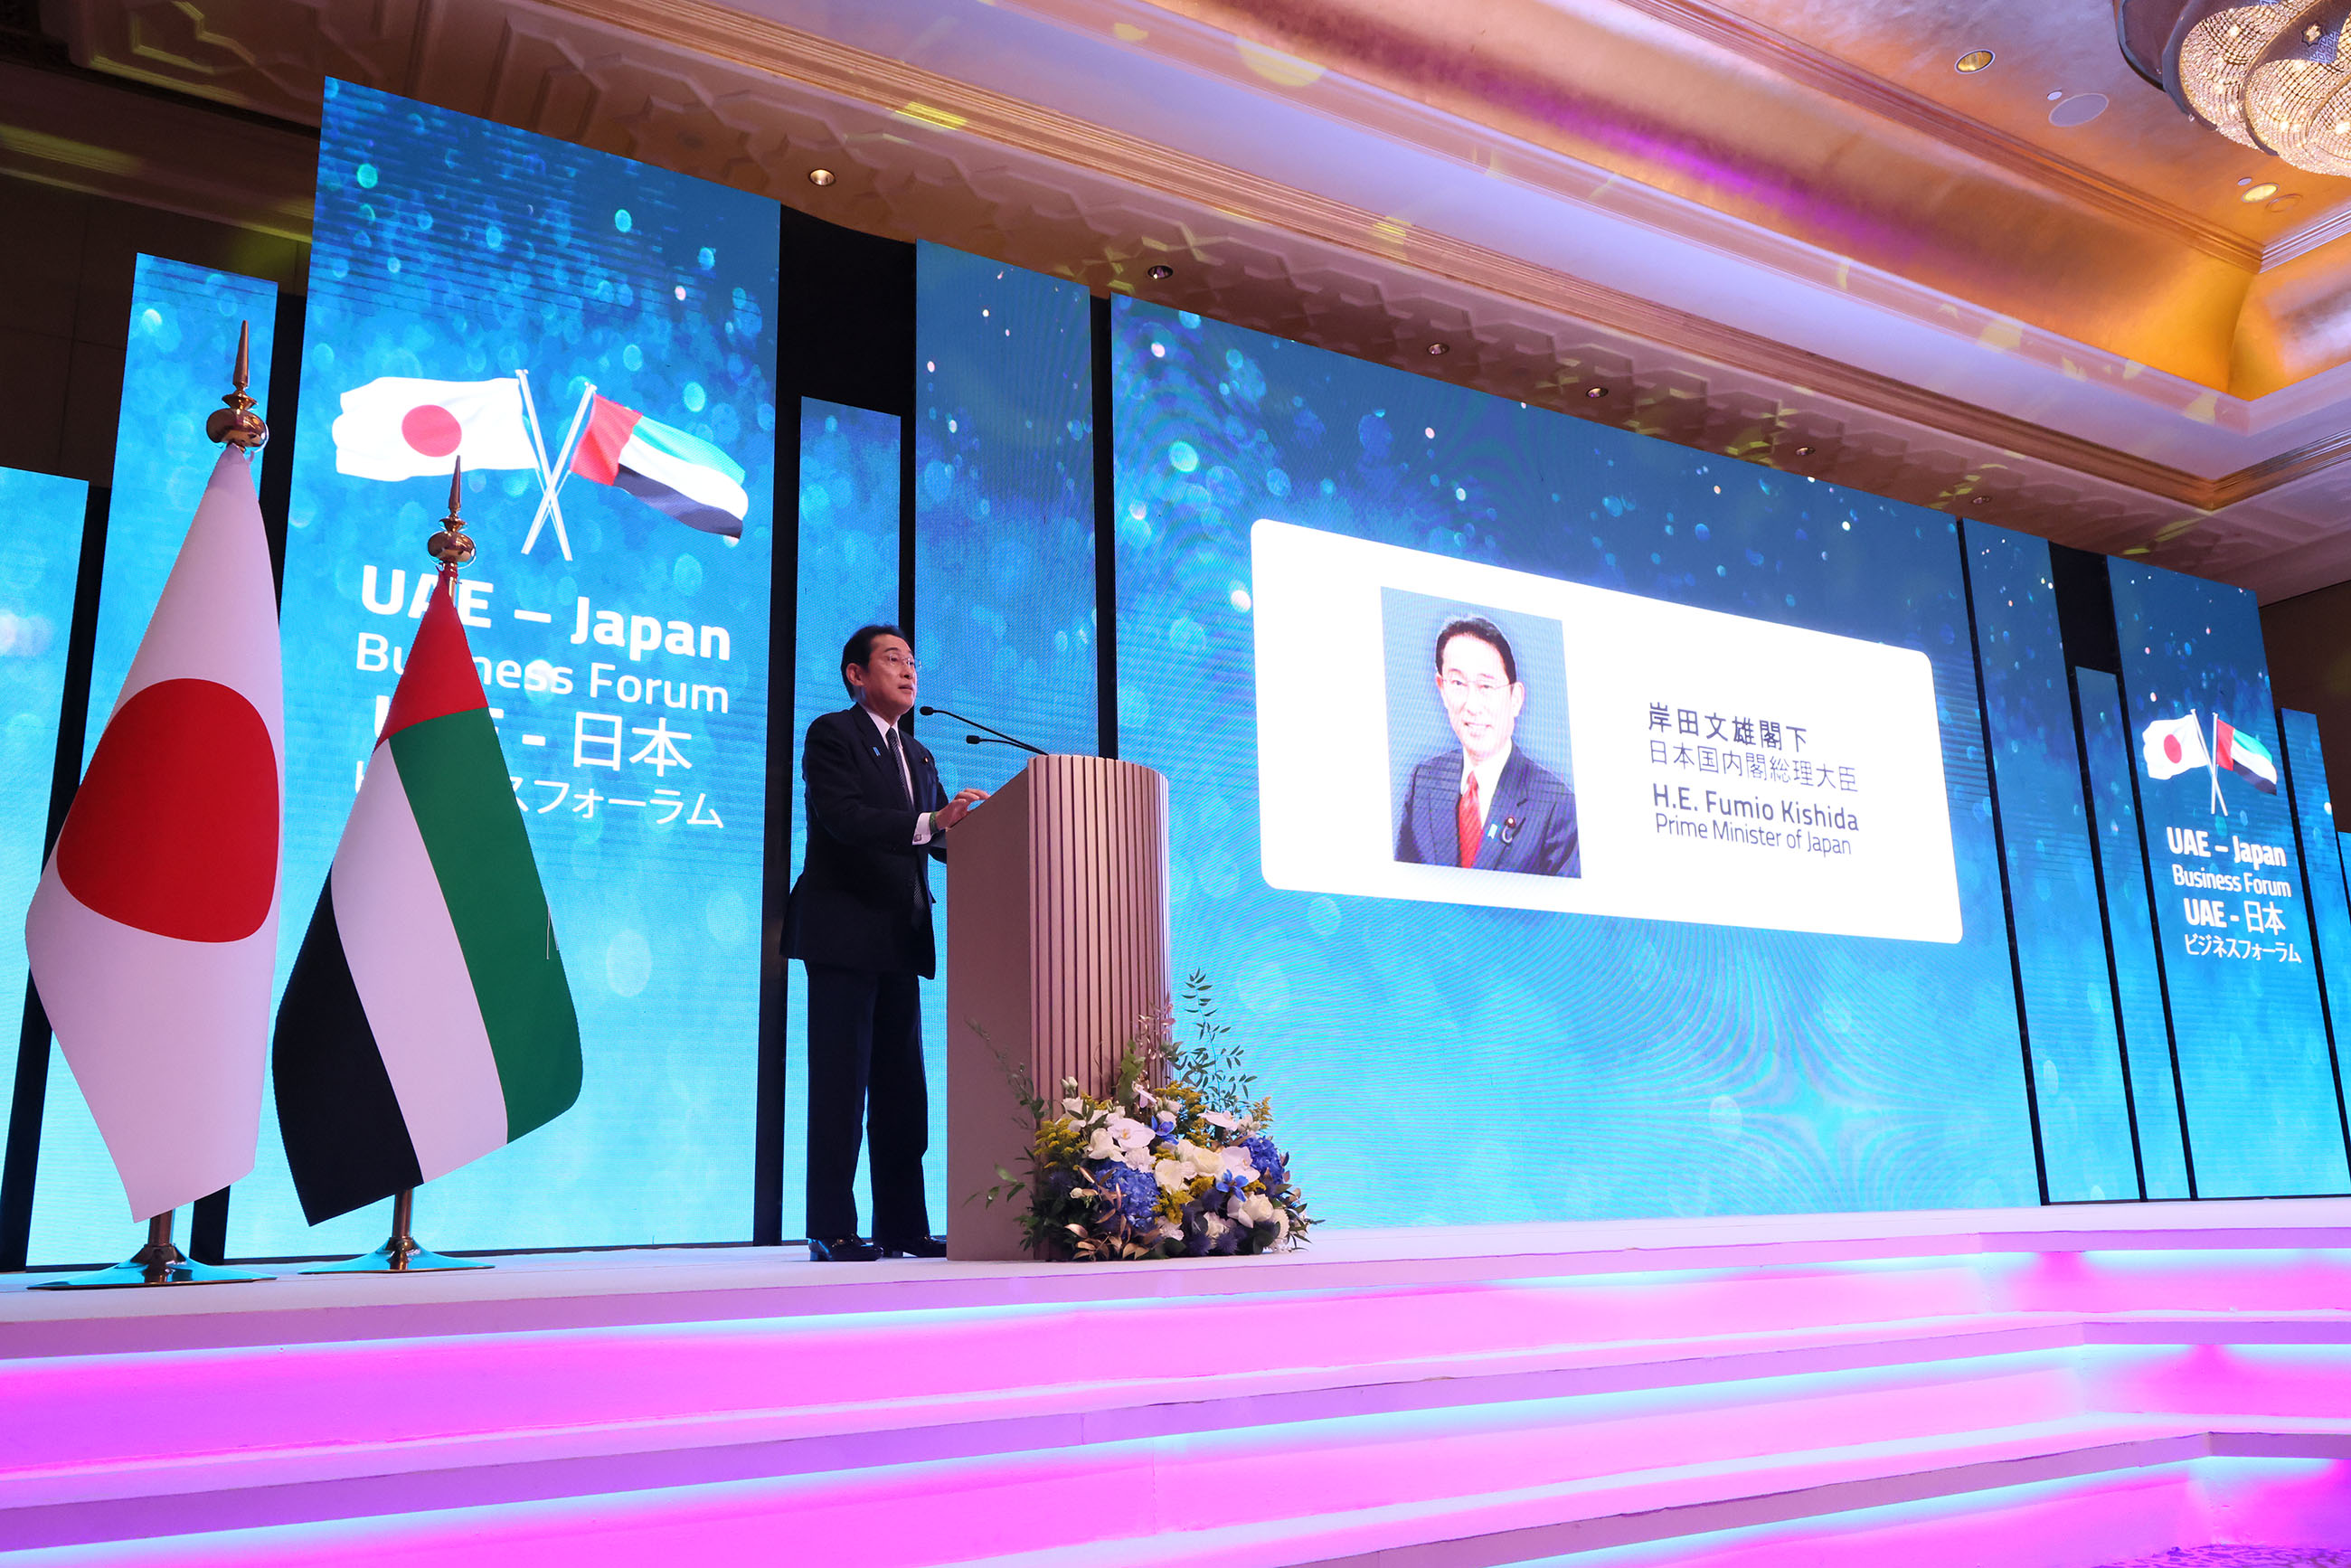 Prime Minister Kishida delivering an address at the Japan-UAE Business Forum (1)